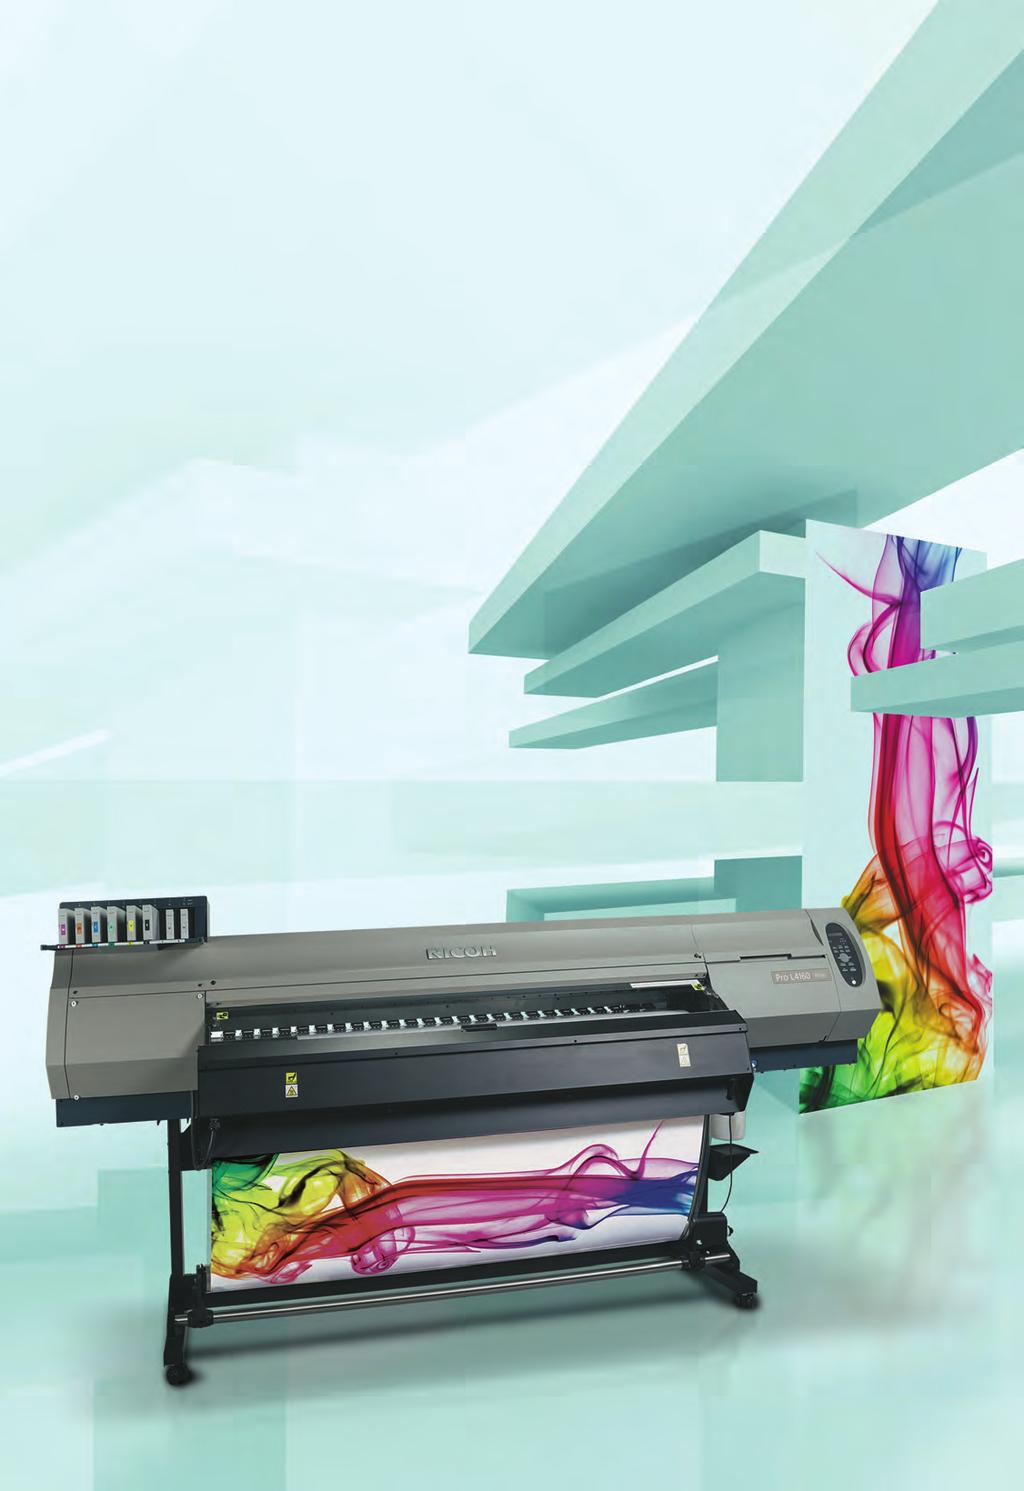 Wielkoformatowa drukarka z szeroką przestrzenią barwną. Czy chcesz rozwijać swój biznes w każdym kierunku? Dzięki nowej serii urządzeń Ricoh Pro L4100, możesz właśnie to zrobić.